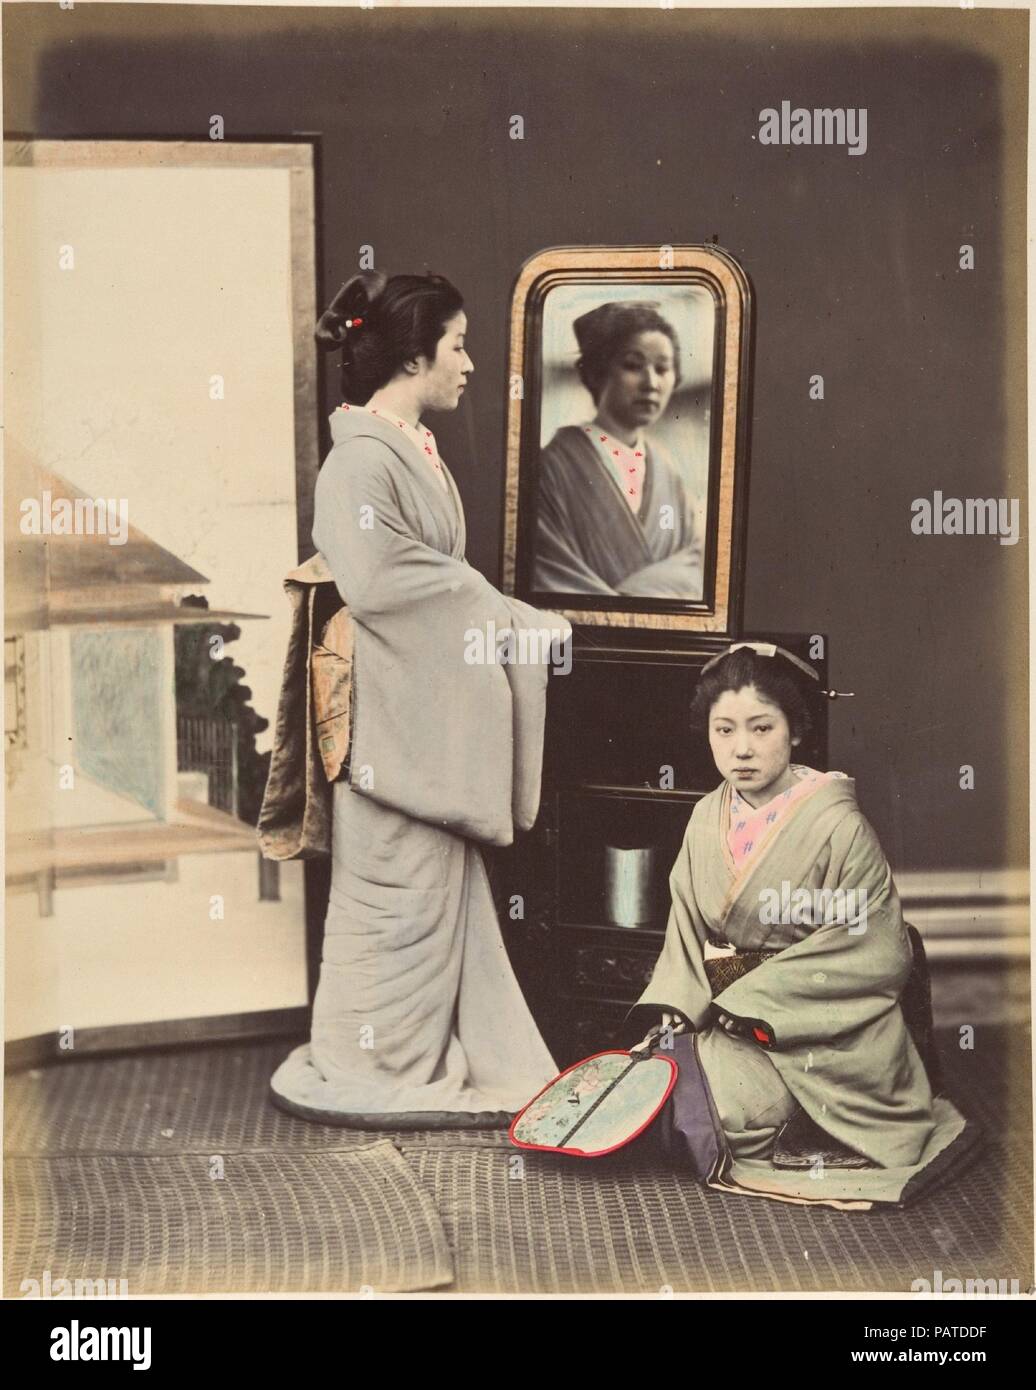 [Japanische Frauen in traditioneller Kleidung]. Artist: Suzuki Shin'ichi (Japanisch, 1835-1919). Abmessungen: 25,2 x 20 cm (9 15/16 x 7 7/8 in.). Datum: 1870. Museum: Metropolitan Museum of Art, New York, USA. Stockfoto